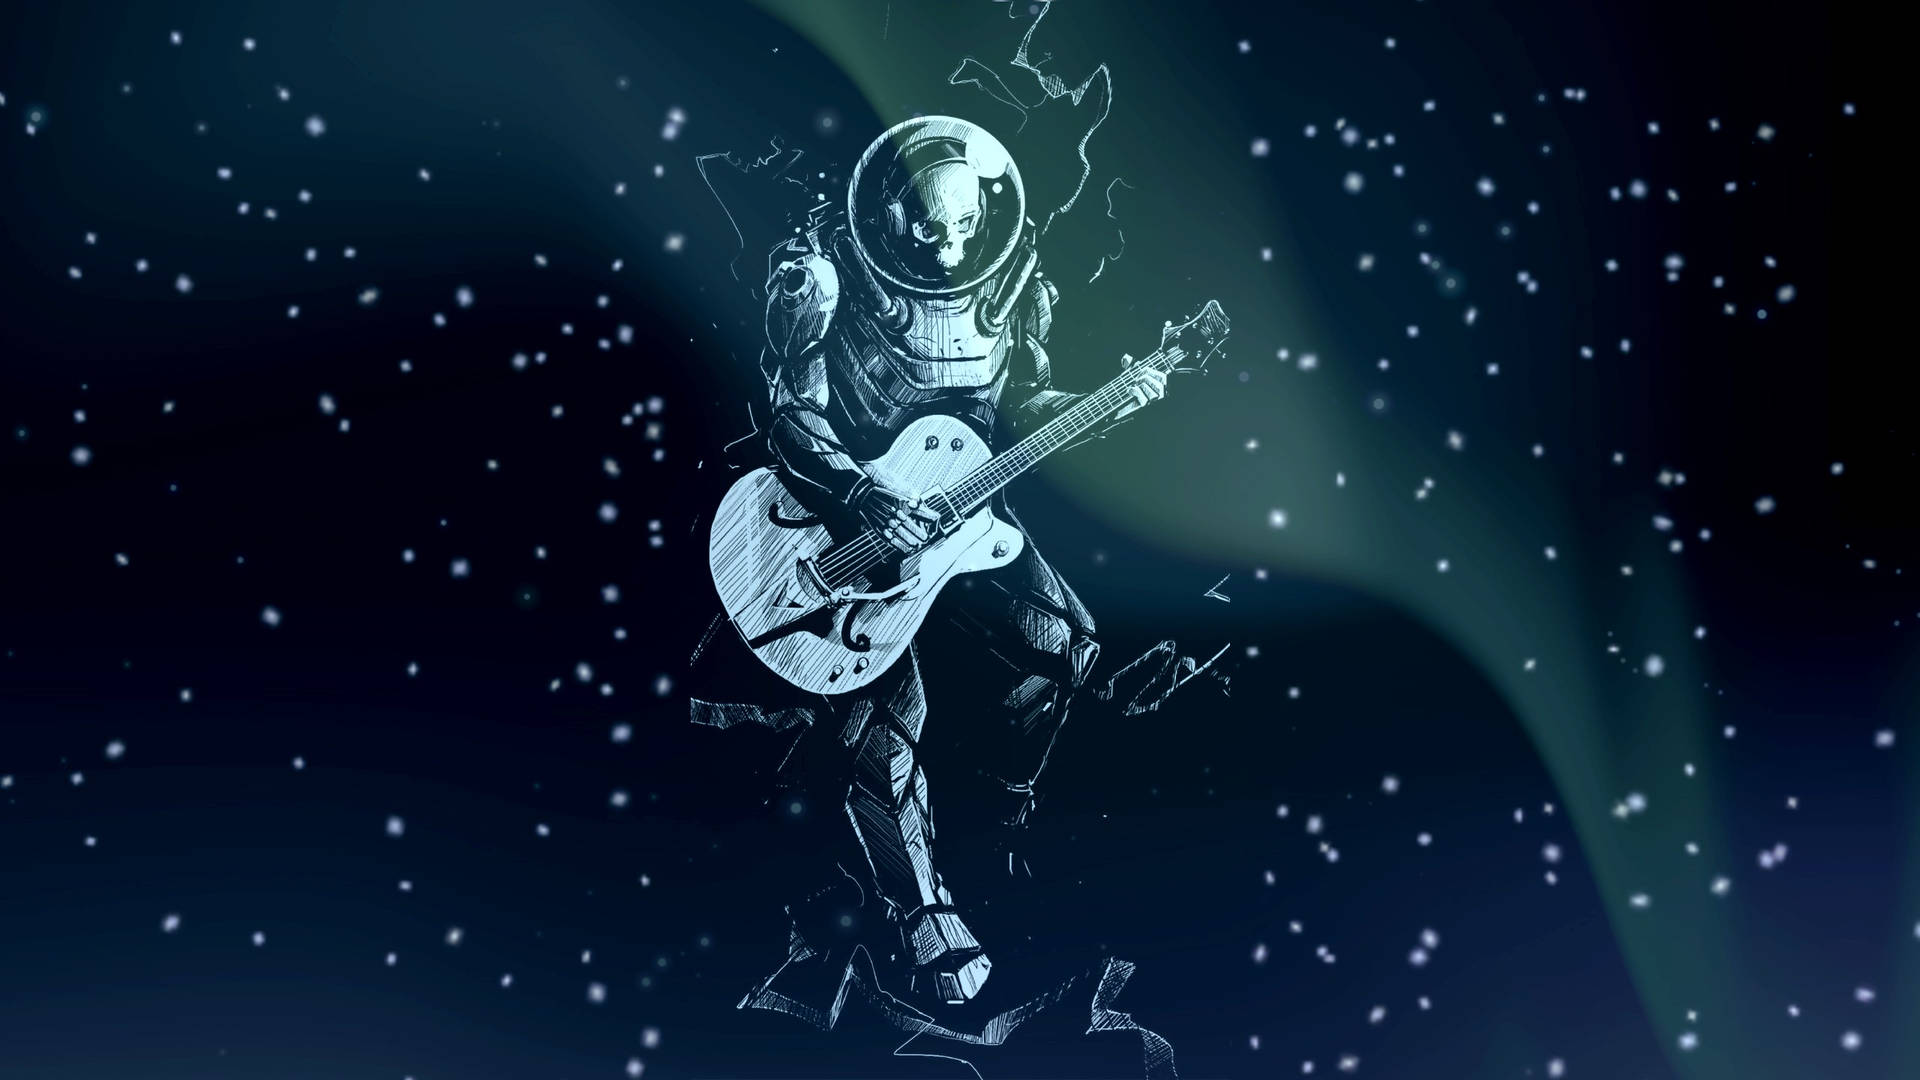 Astronaut I Rummet Spiller Guitar Wallpaper